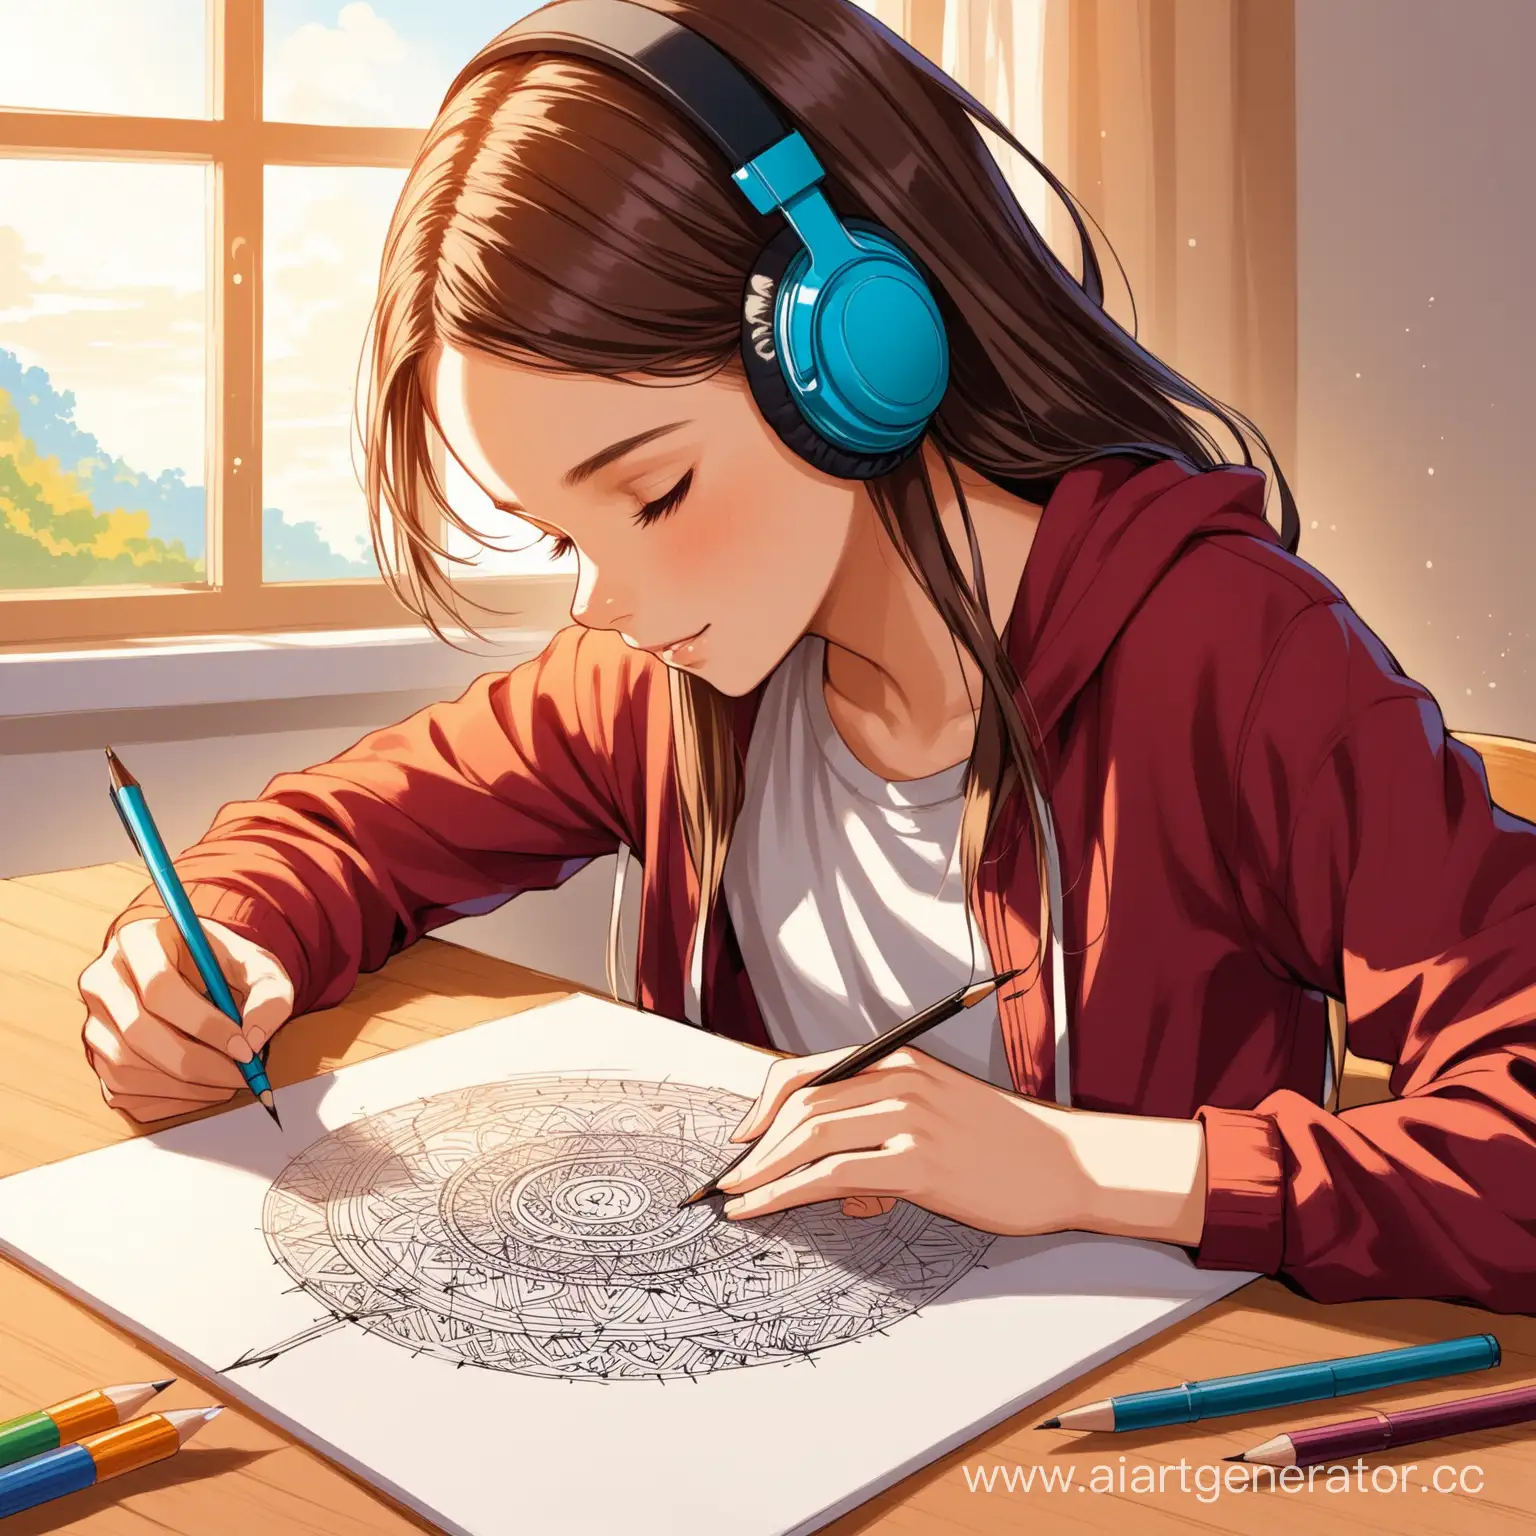  Творчество. Подросток начинает заниматься рисованием, музыкой или написанием стихов, чтобы выразить свои эмоции и снизить уровень стресса.